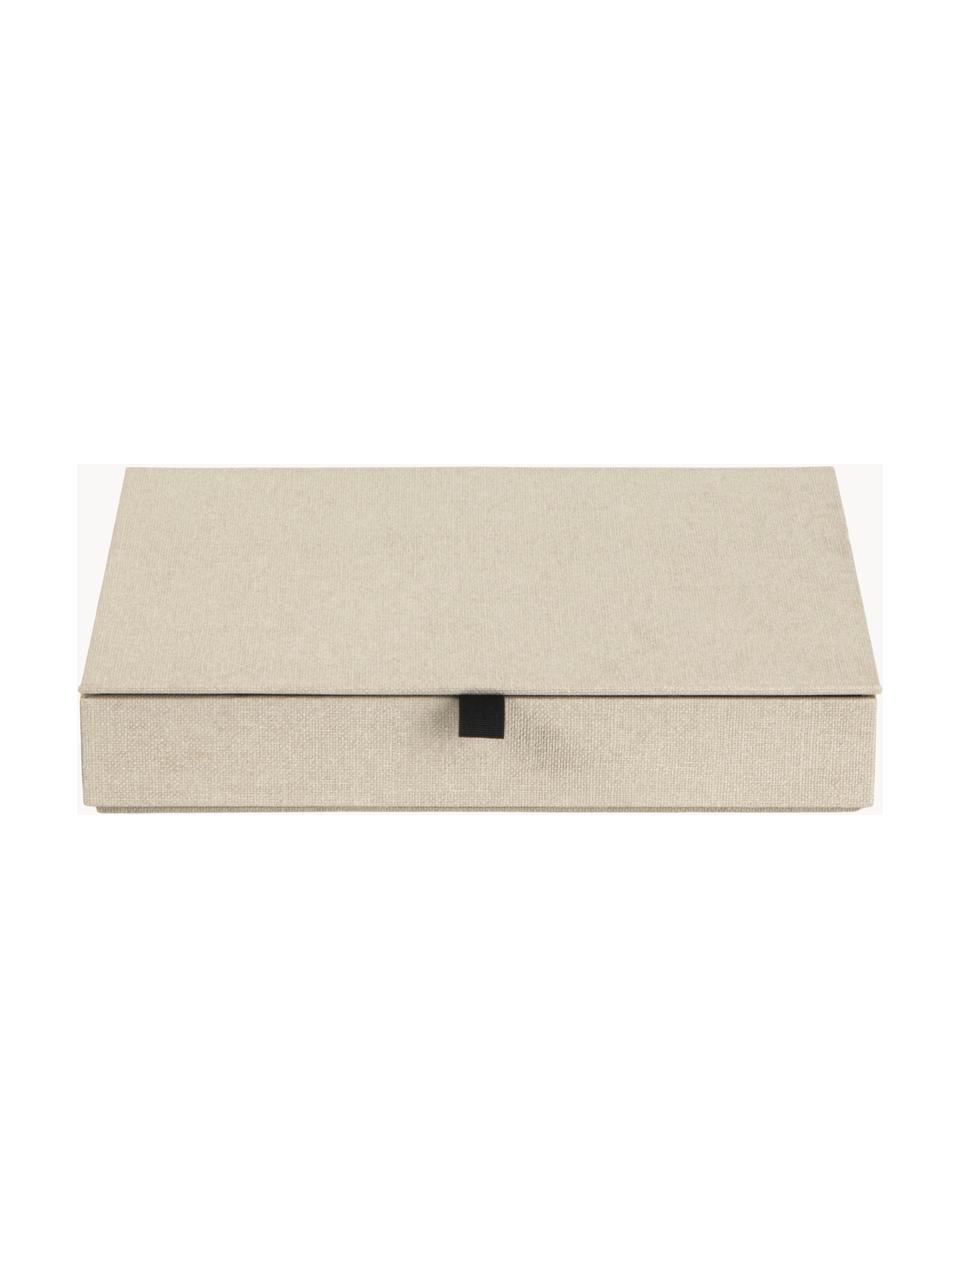 Joyero Precious, Cartón resistente, Beige claro, An 27 x F 19 cm